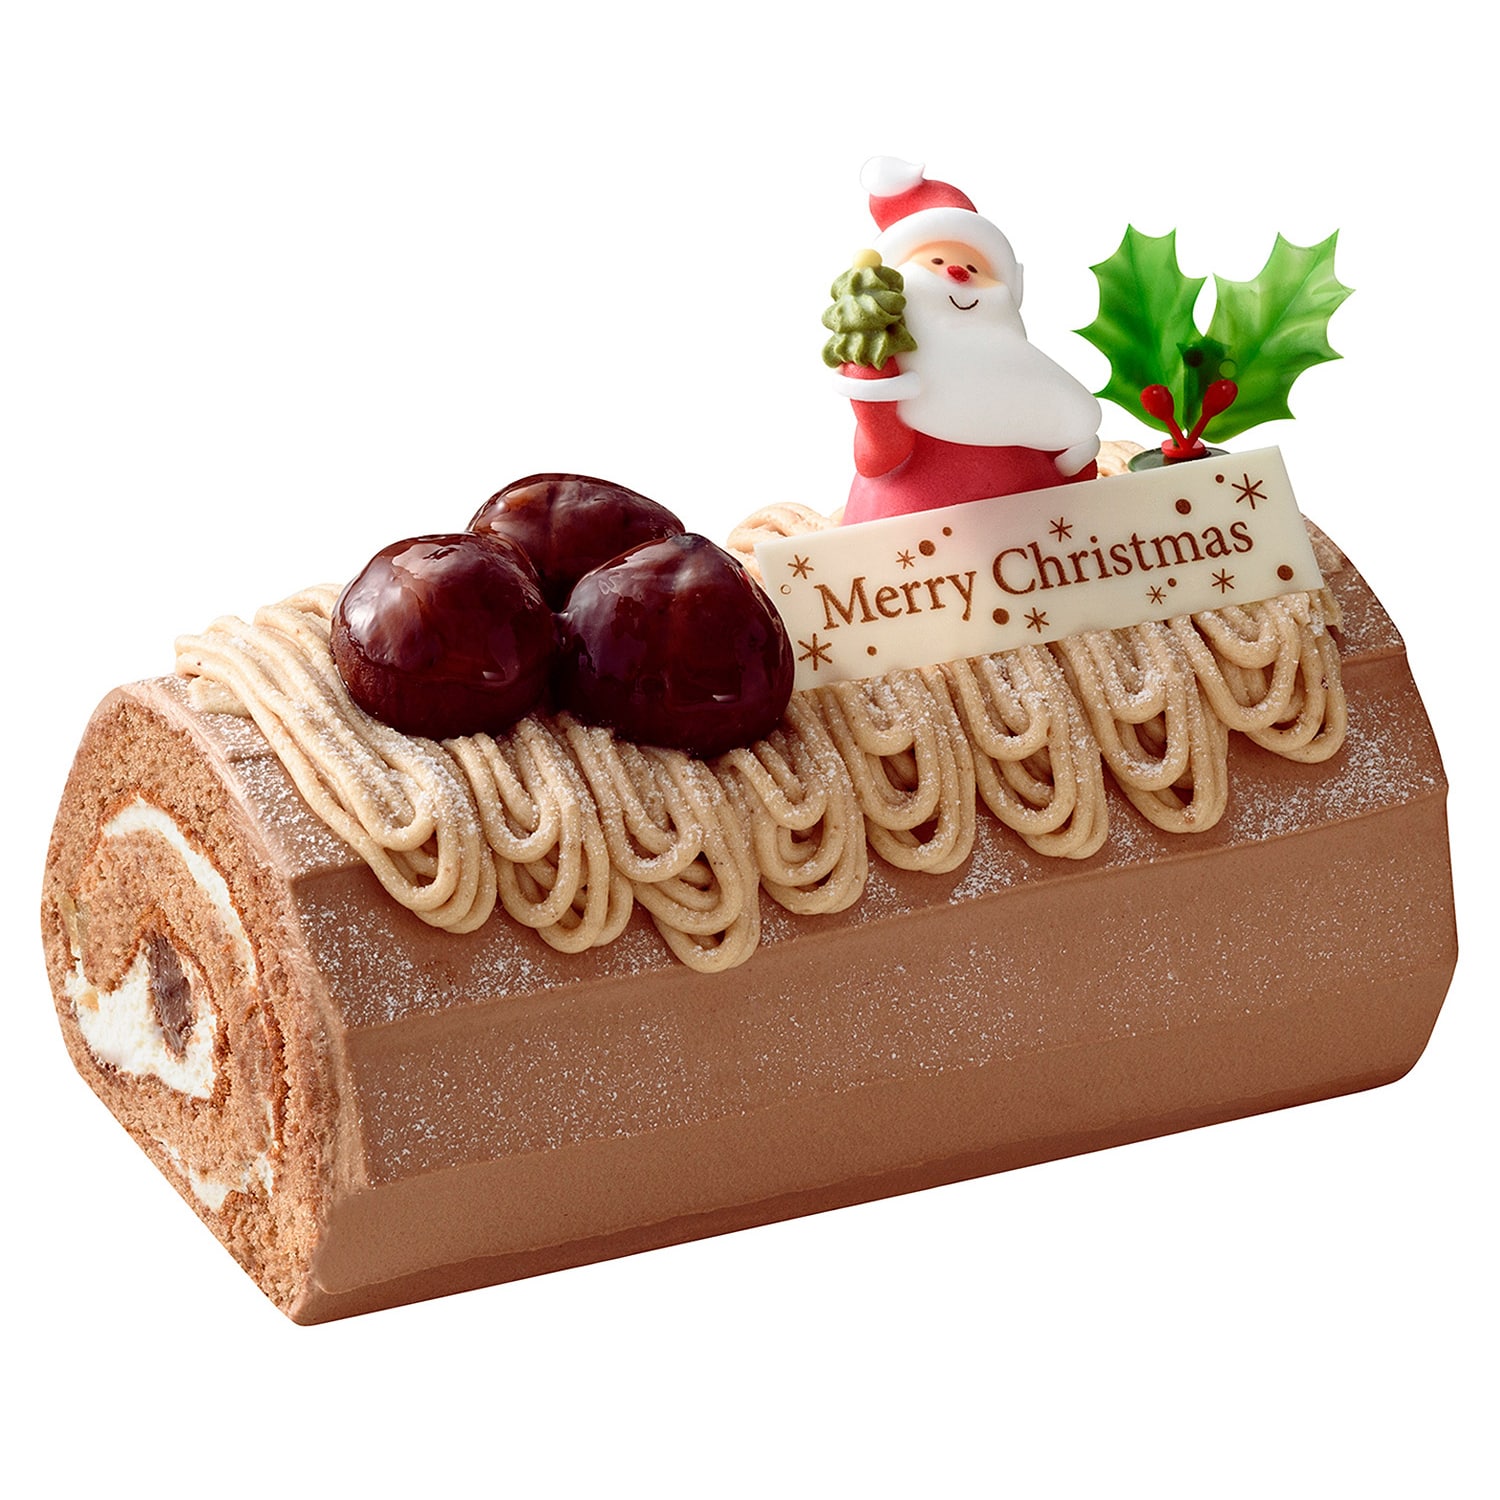 ユーハイム,クリスマス,2021,ケーキ,ギフト,菓子